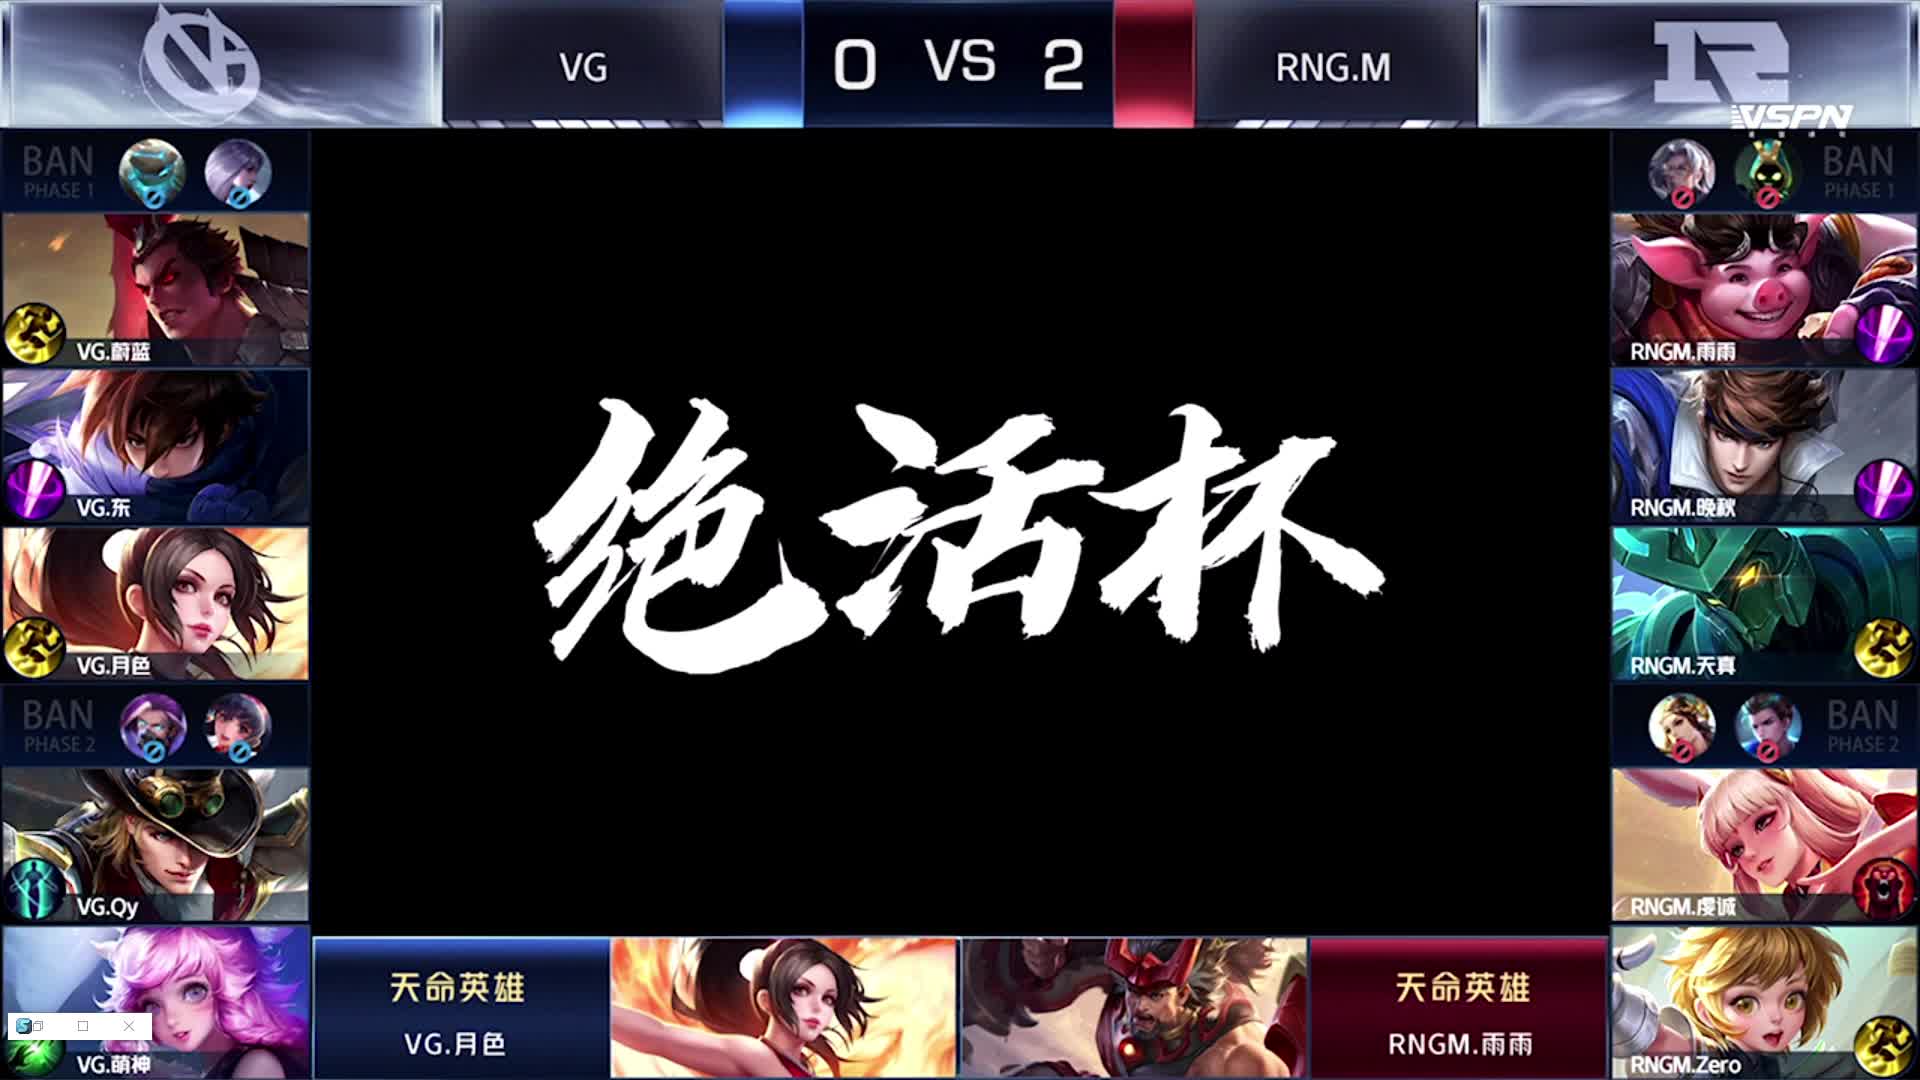 VG vs RNG.M-3 王者荣耀绝活杯